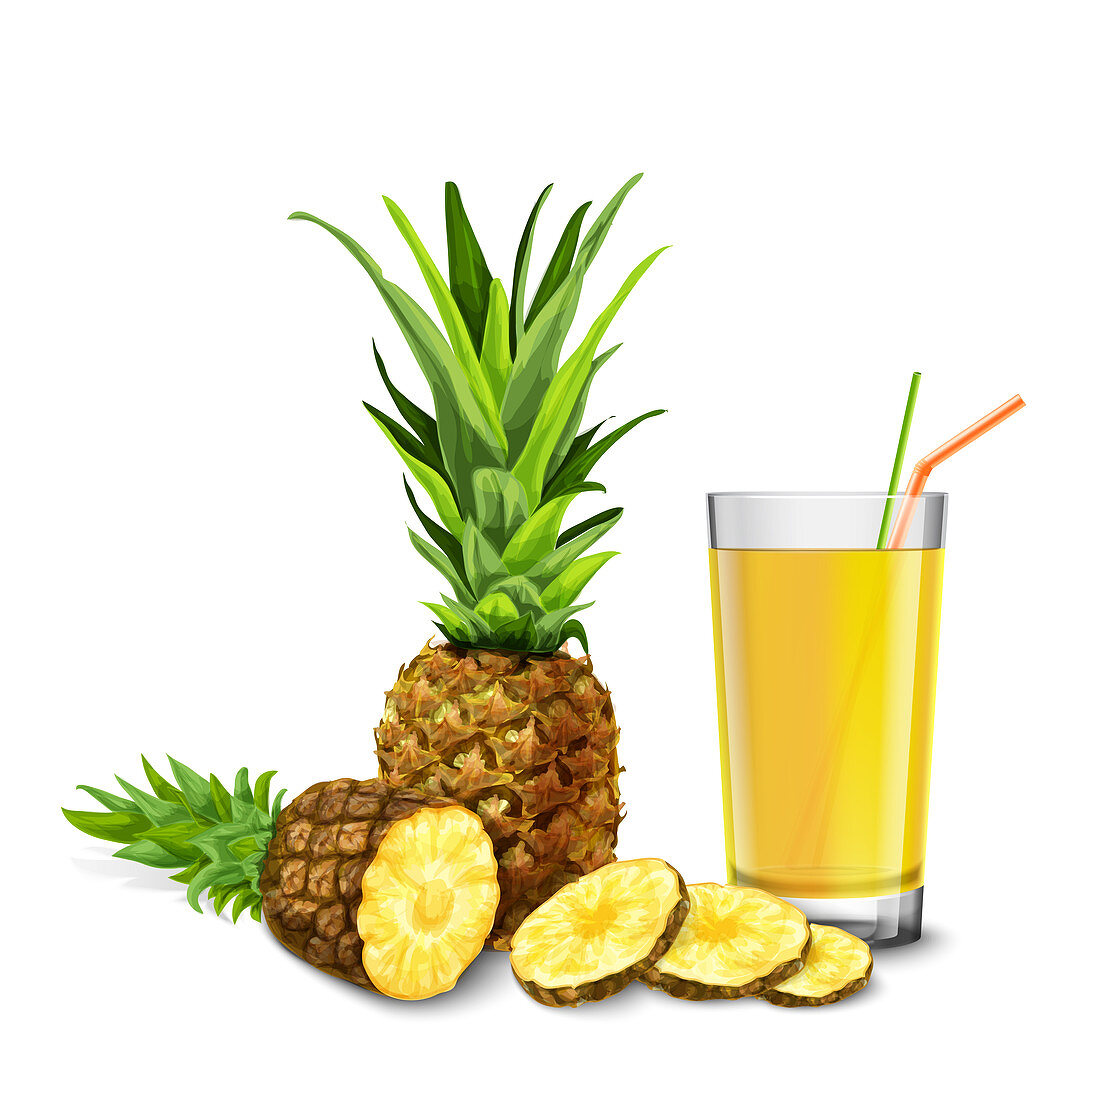 Pineapple juice, illustration